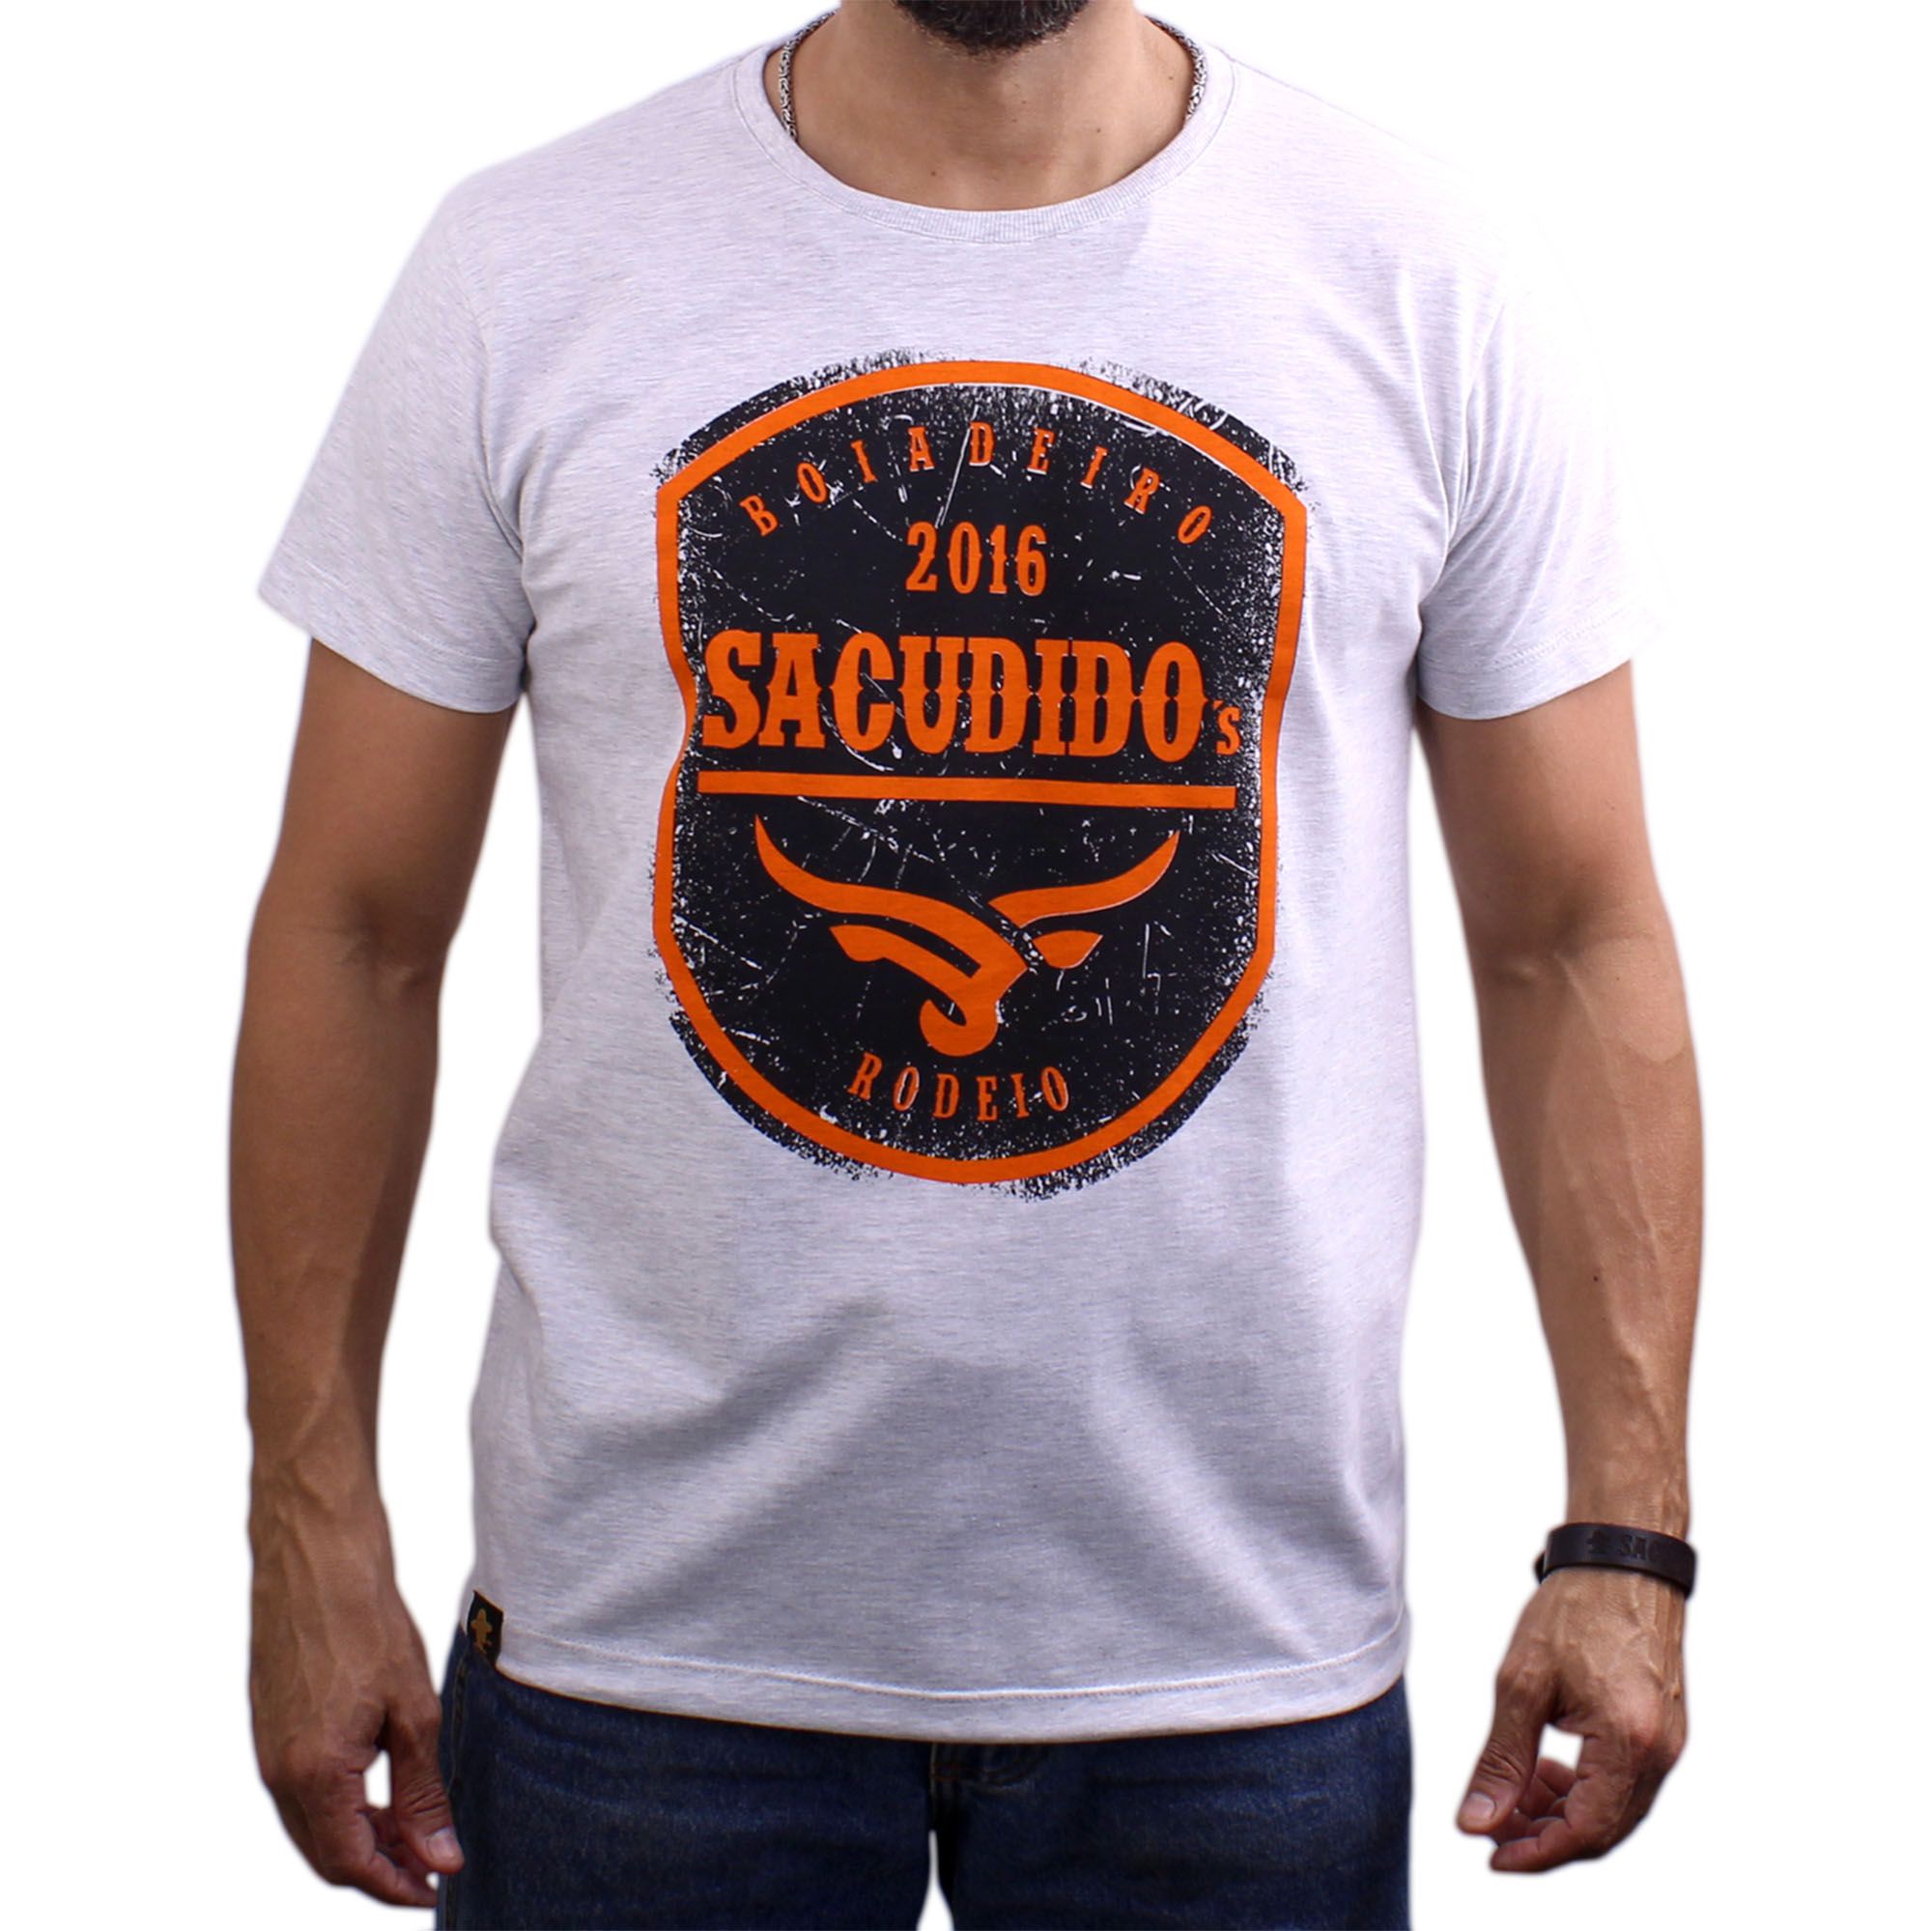 Camiseta Sacudido's - Peão de Rodeio - Cru Bruto Caipira Sertanejo